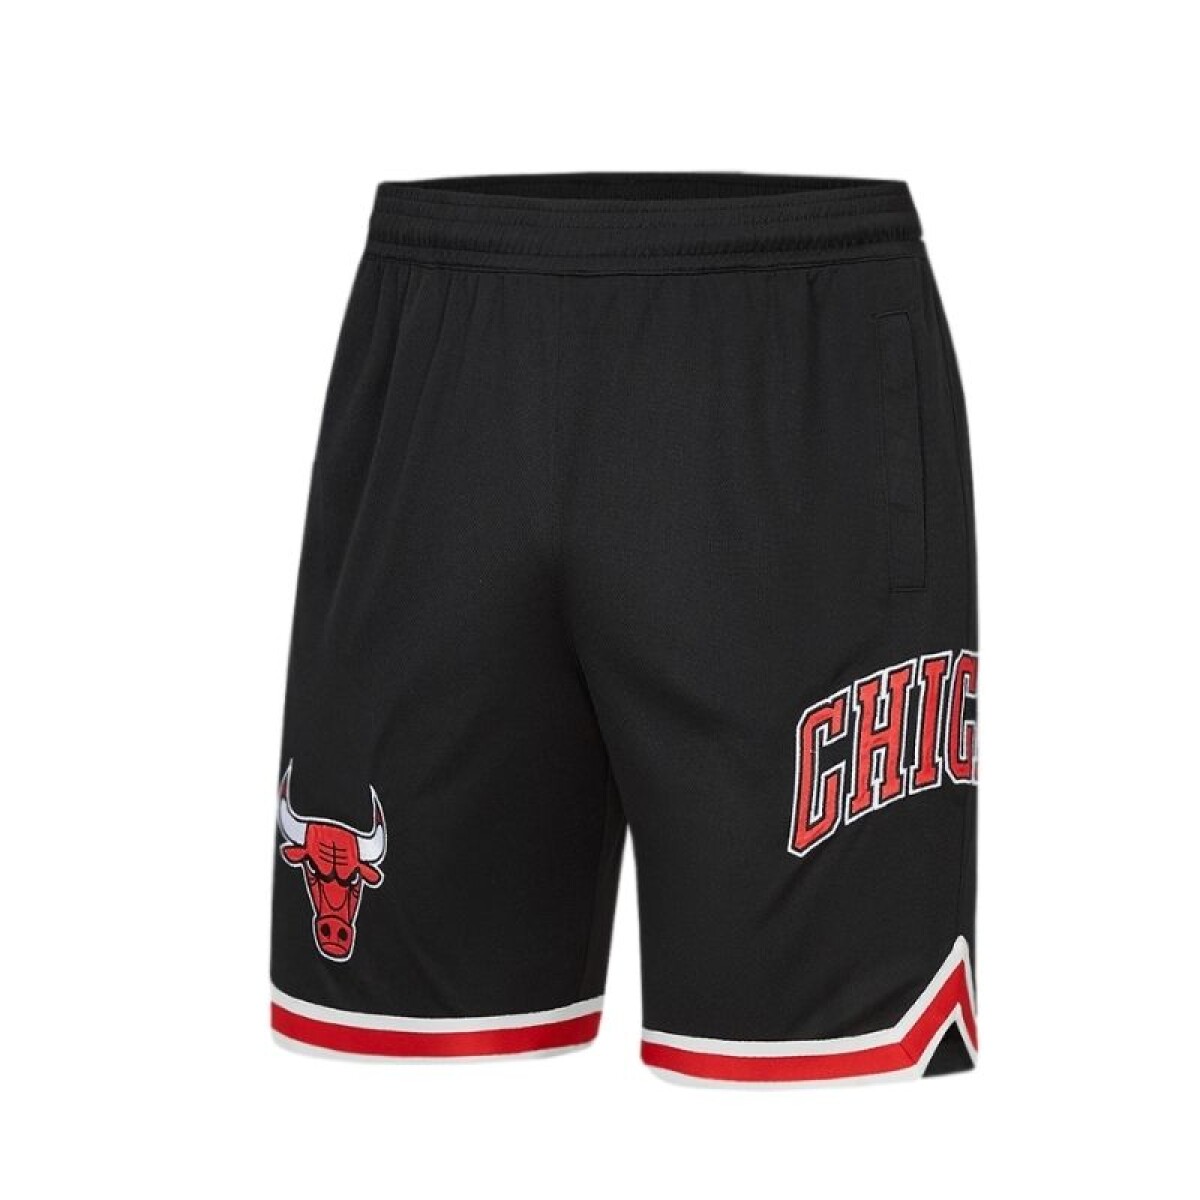 Short NBA Hombre Chicago Bulls - S/C 